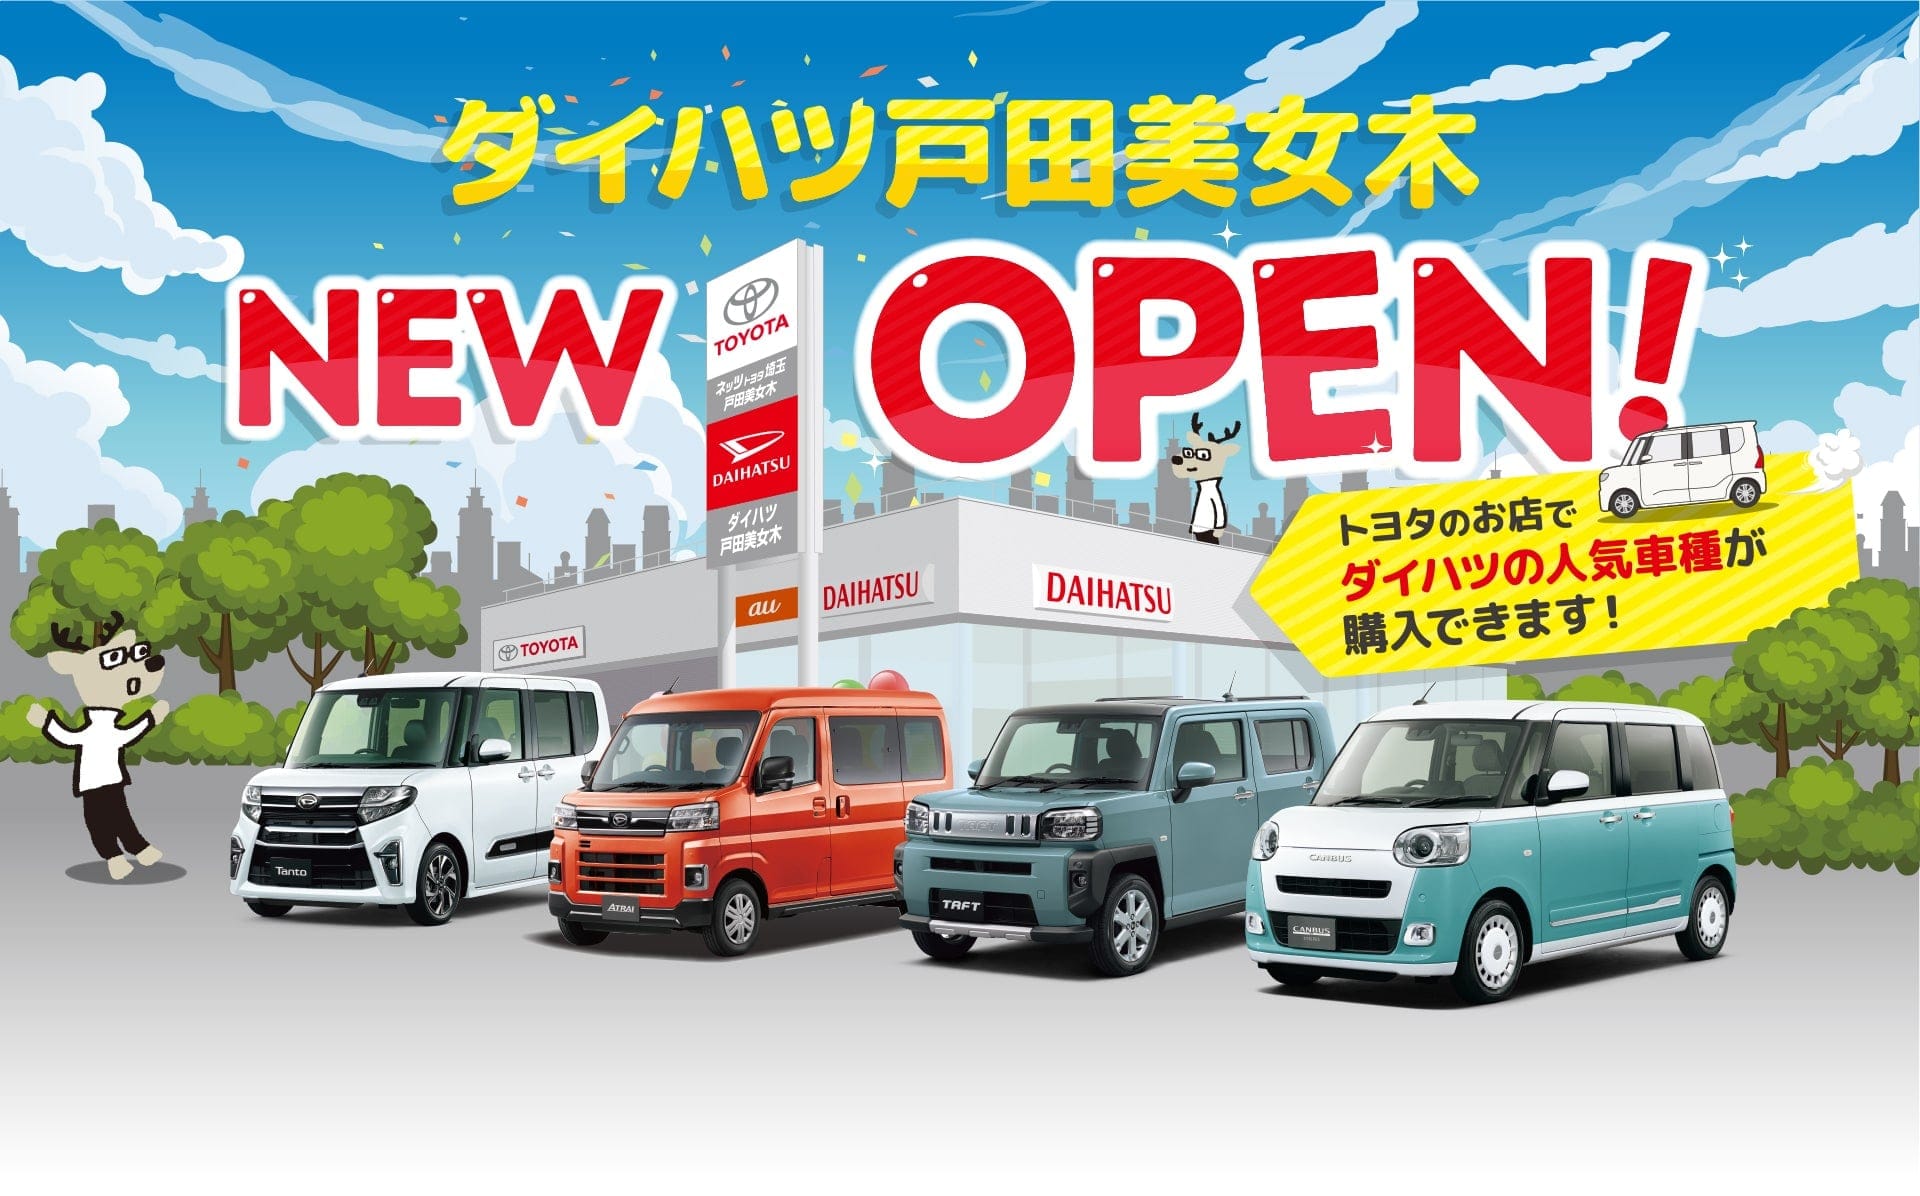 ダイハツ戸田美女木,NEW OPEN,トヨタのお店でダイハツの人気車種が購入できます!